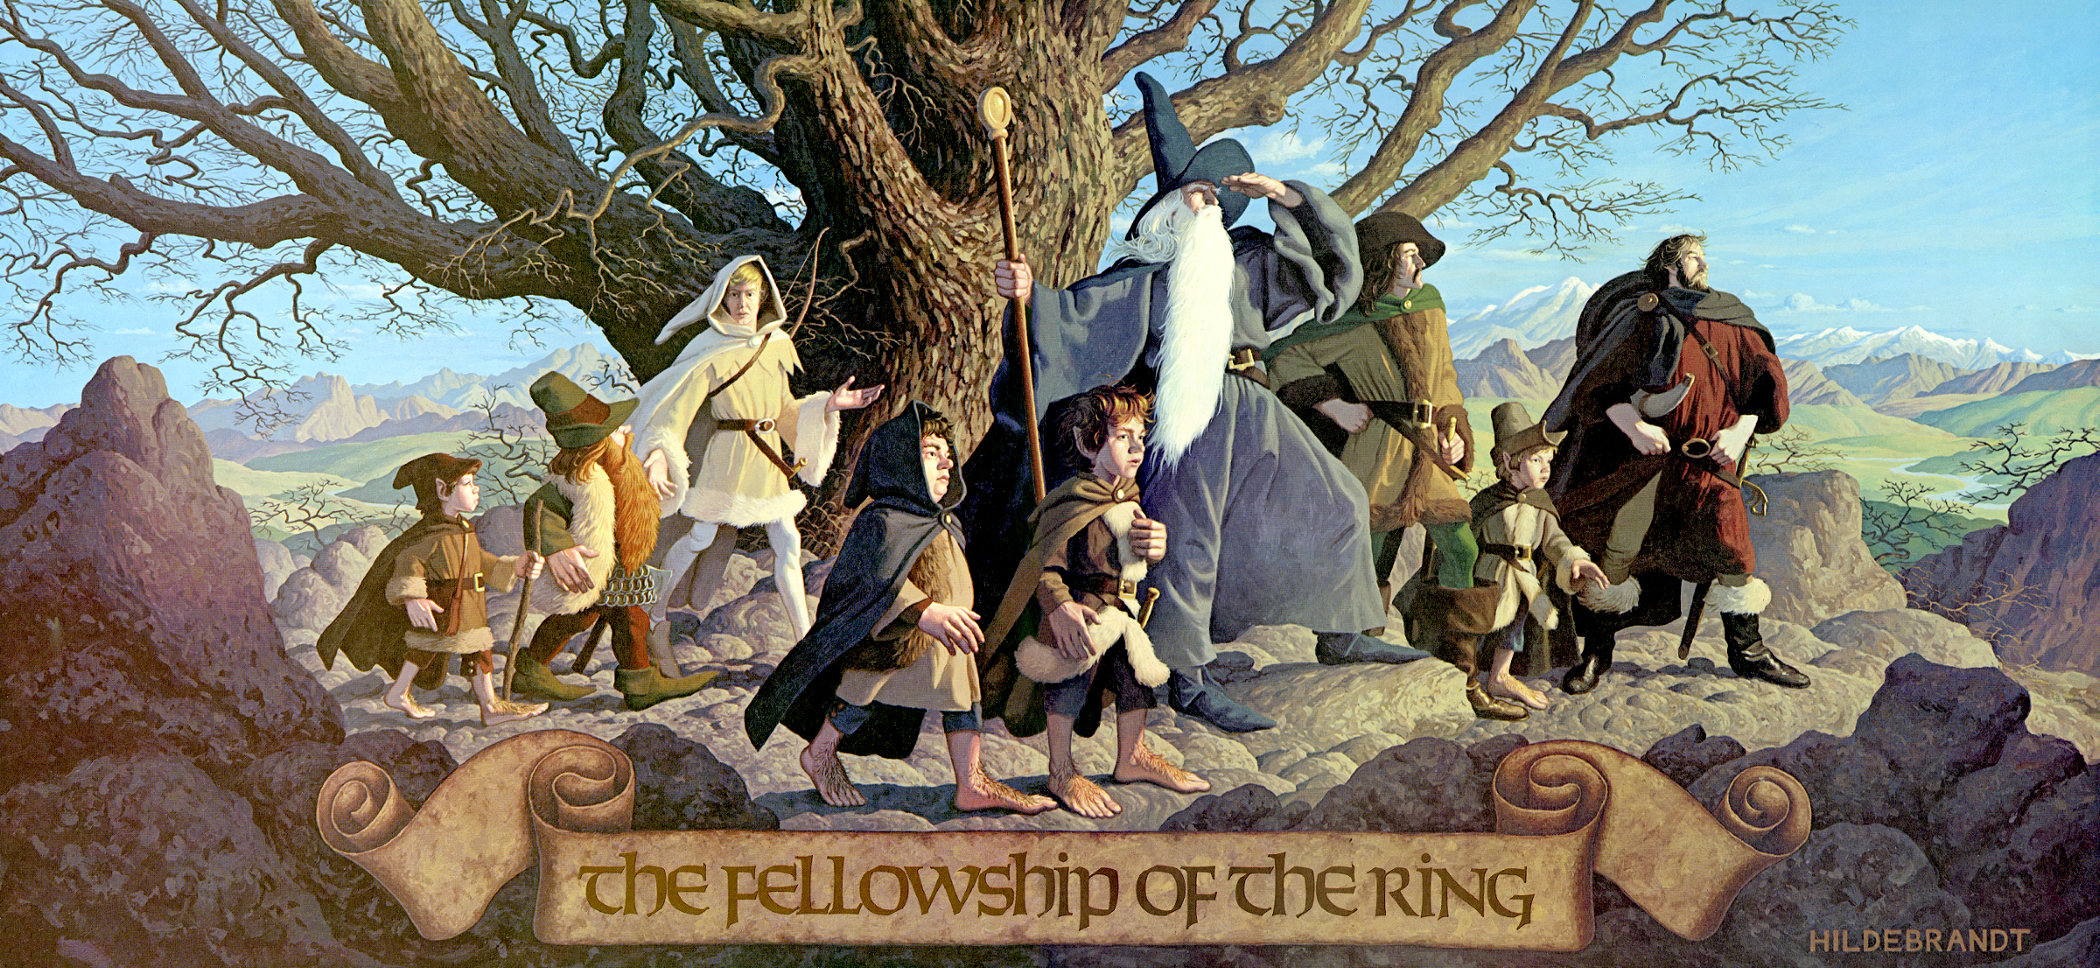 Nob - Tolkien Gateway